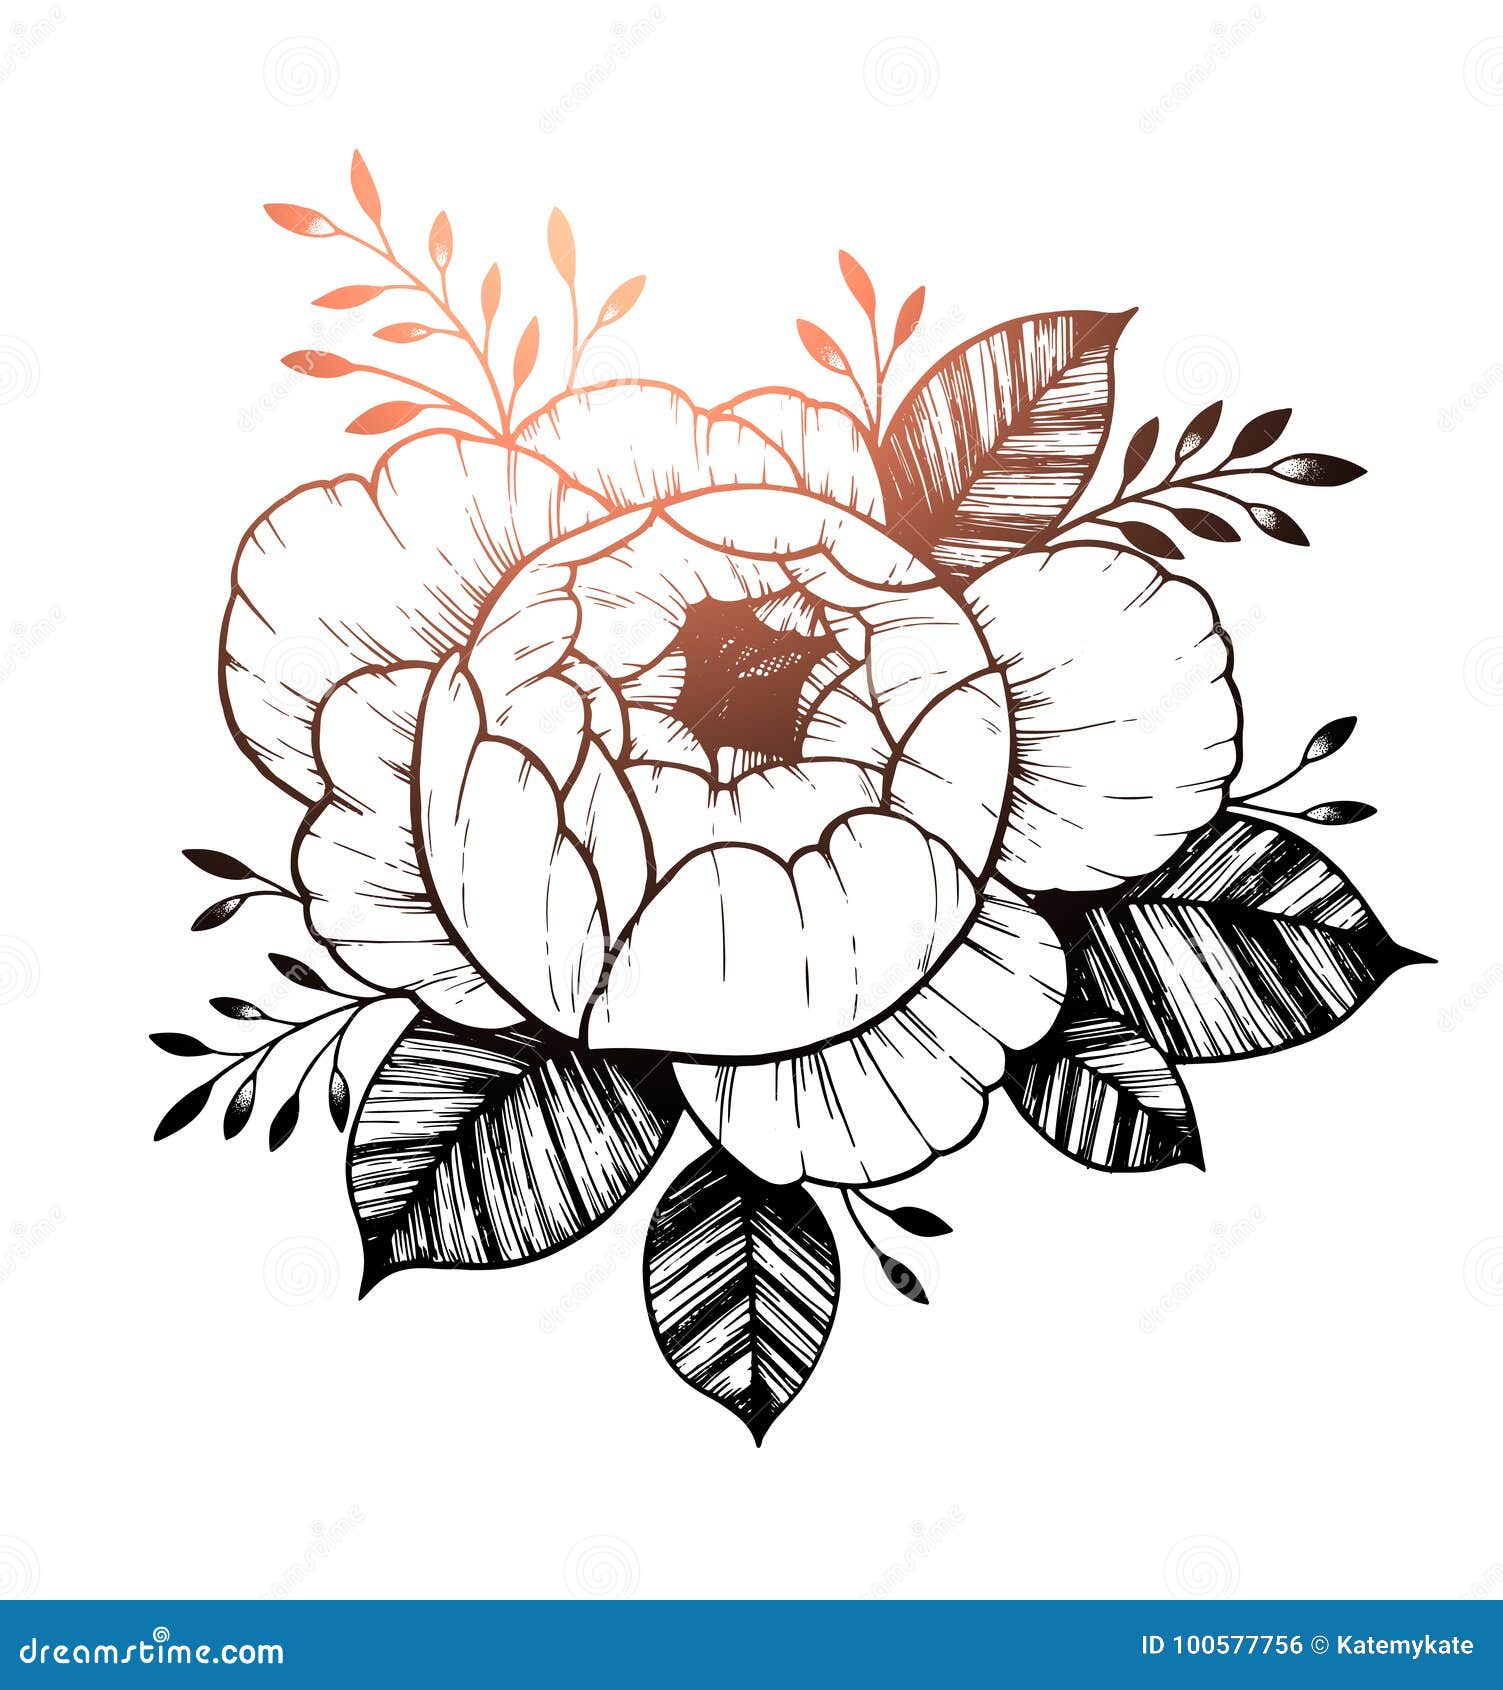 Elegant Flower Tattoo Design for Women